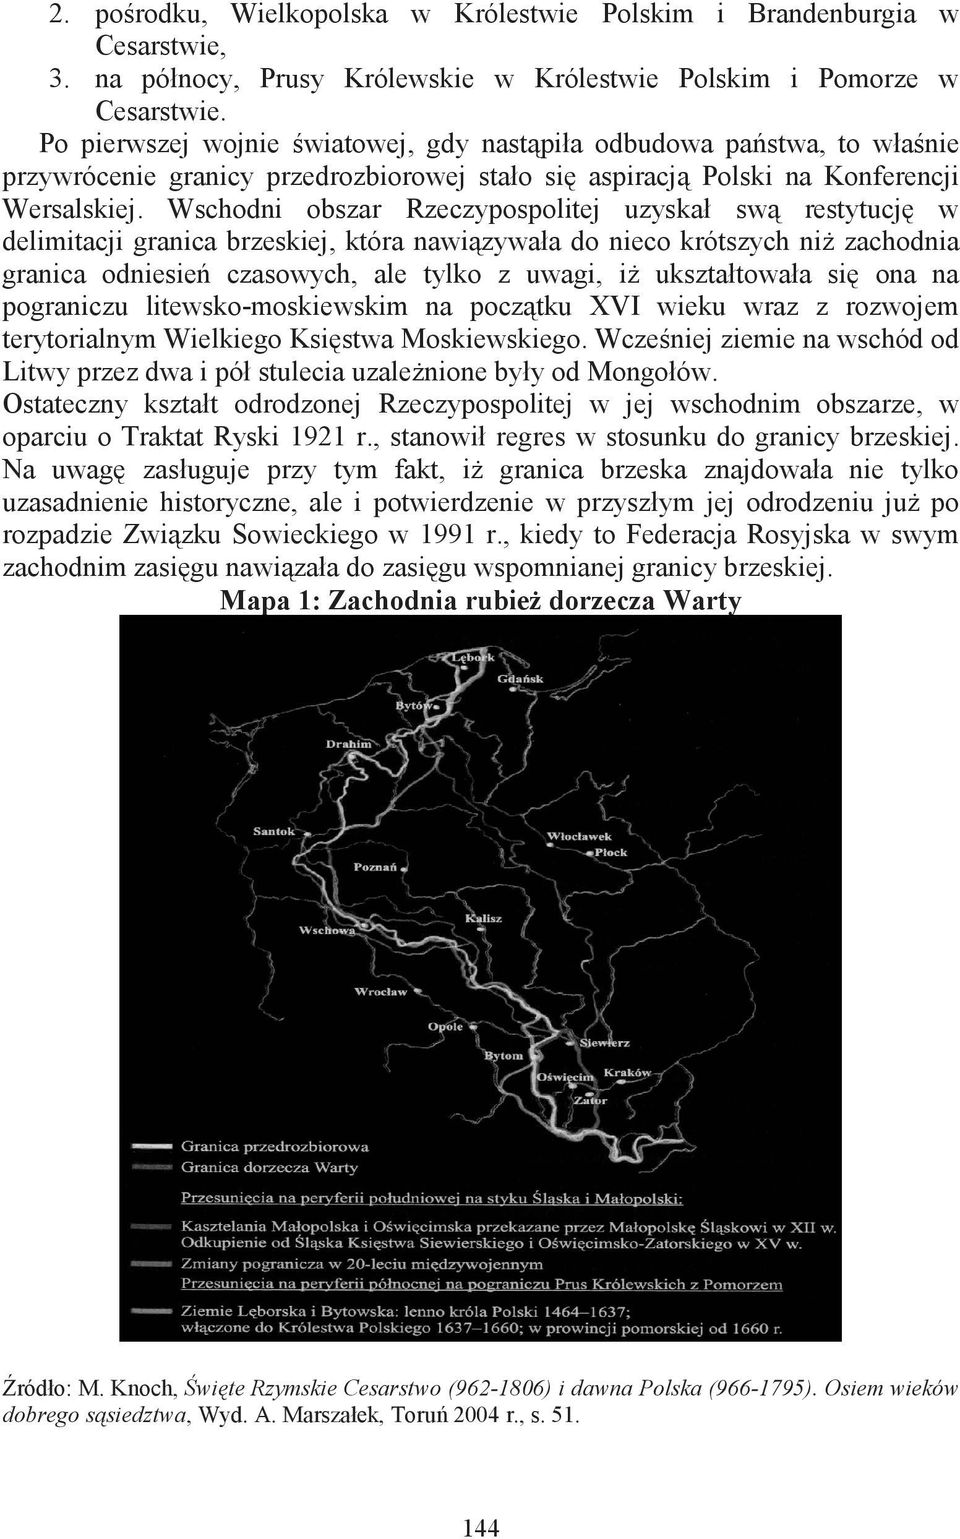 Wschodni obszar Rzeczypospolitej uzyskał sw restytucj w delimitacji granica brzeskiej, która nawizywała do nieco krótszych ni zachodnia granica odniesie czasowych, ale tylko z uwagi, i ukształtowała